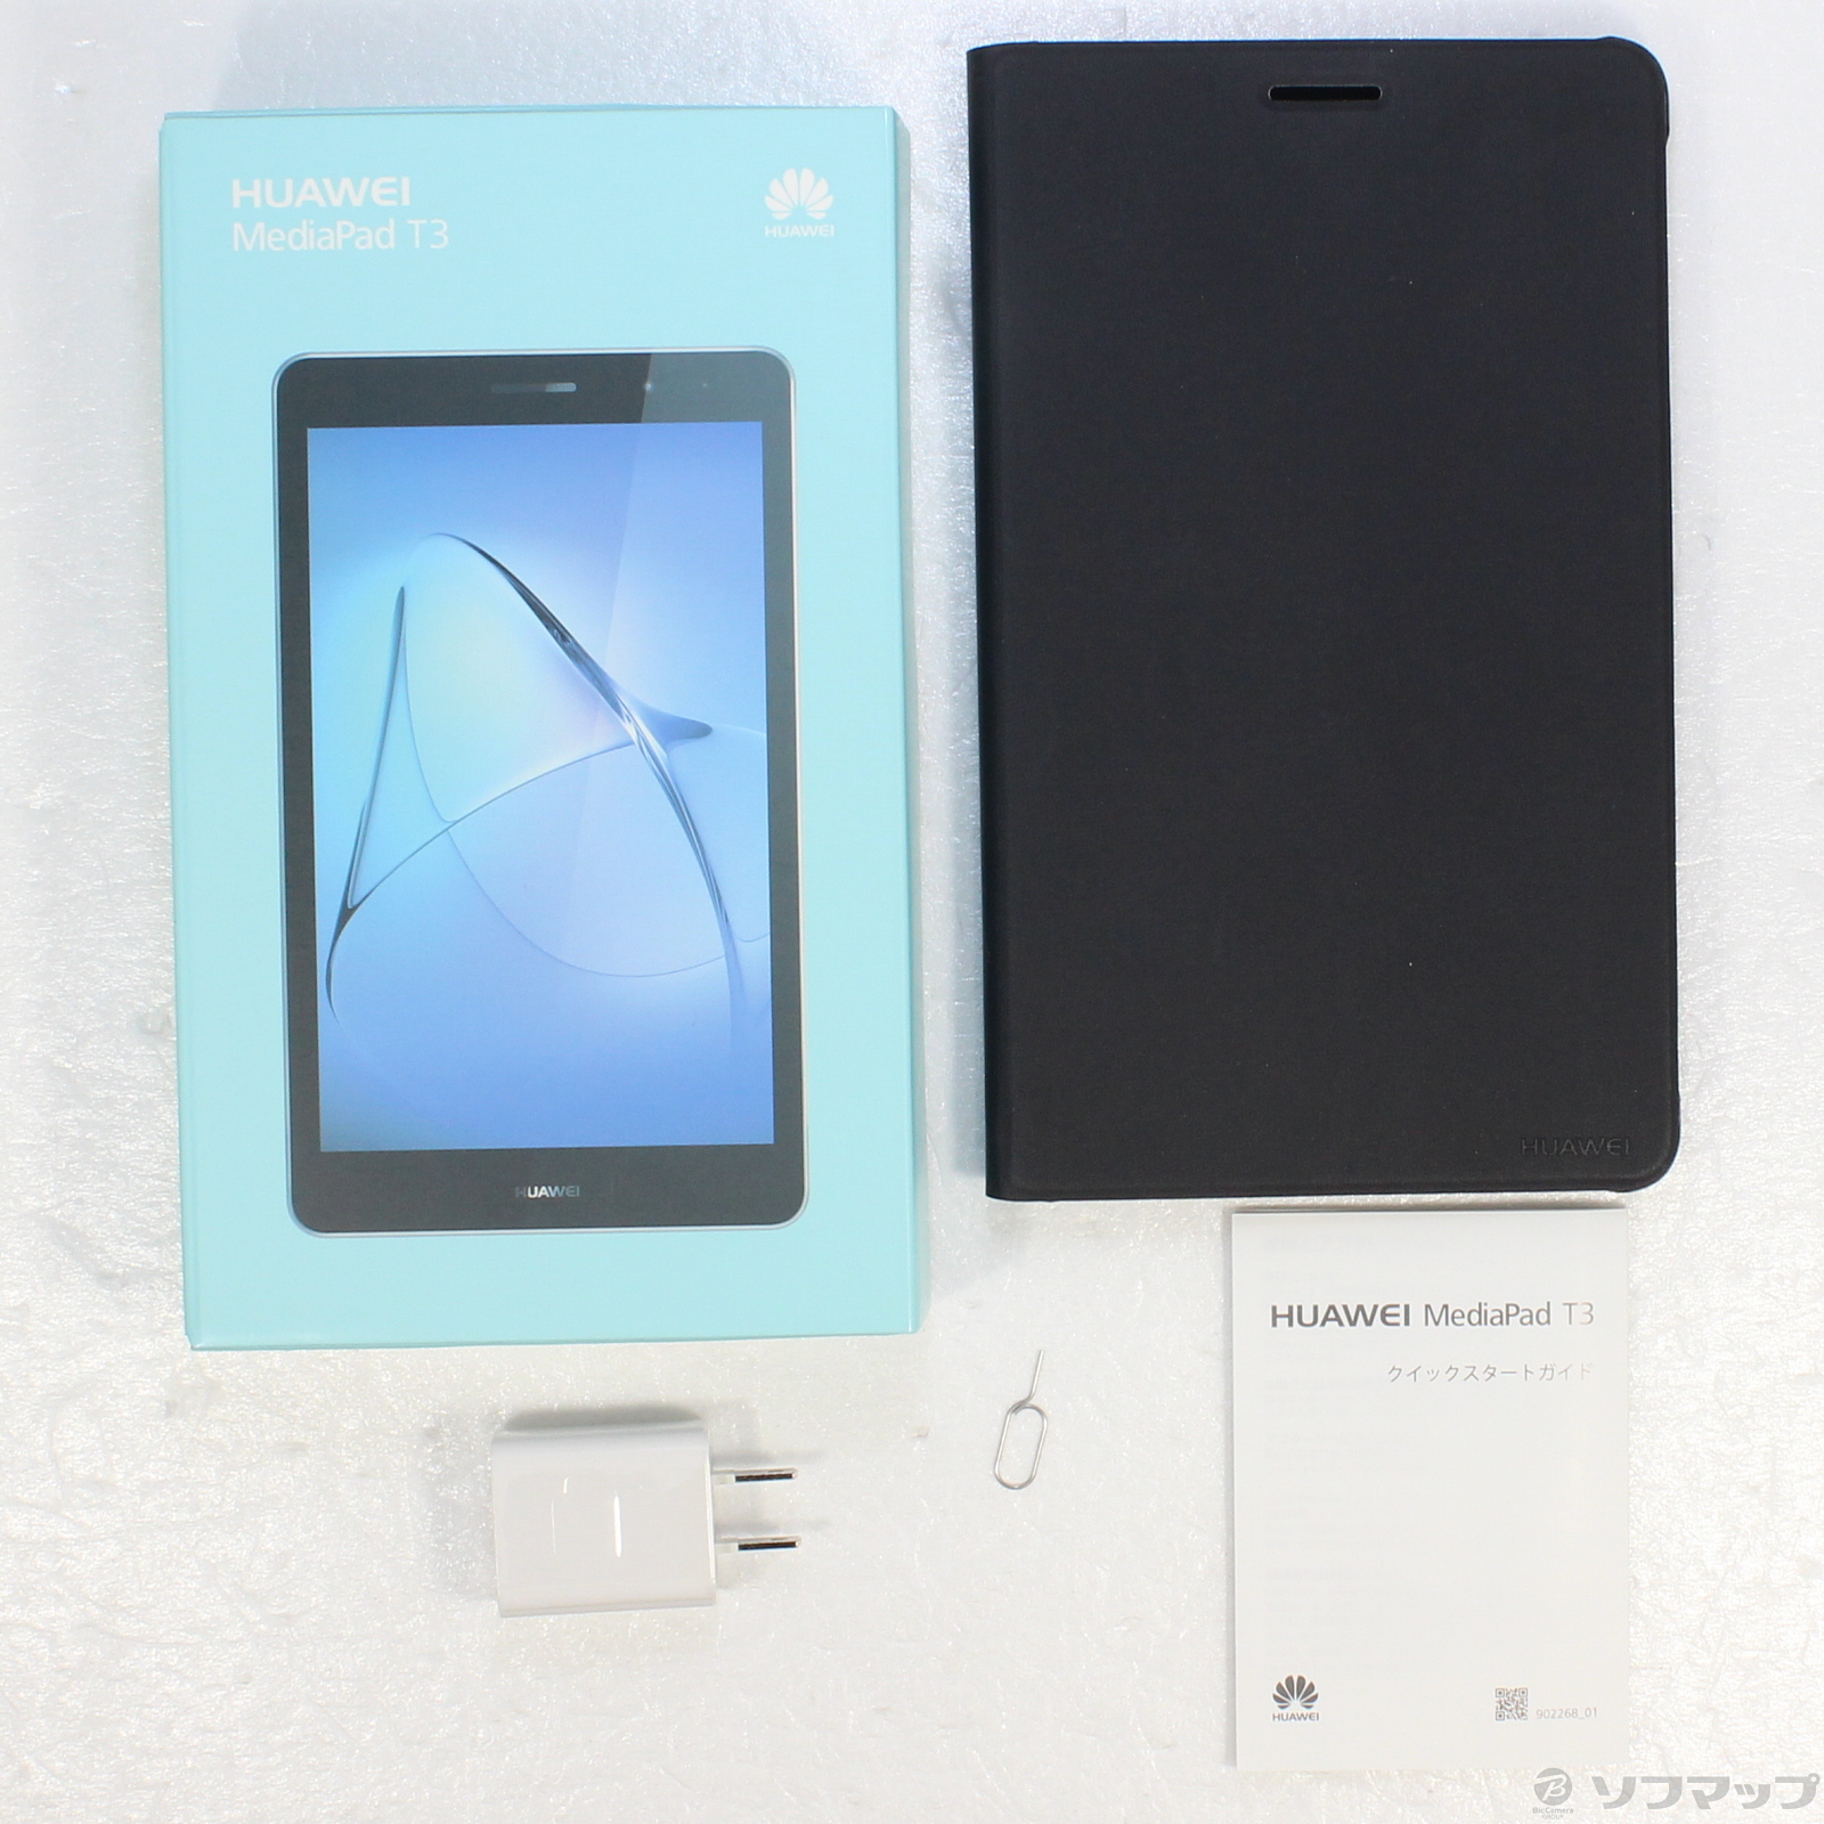 HUAWEI MediaPad T3 SIMフリー 新品未開封品